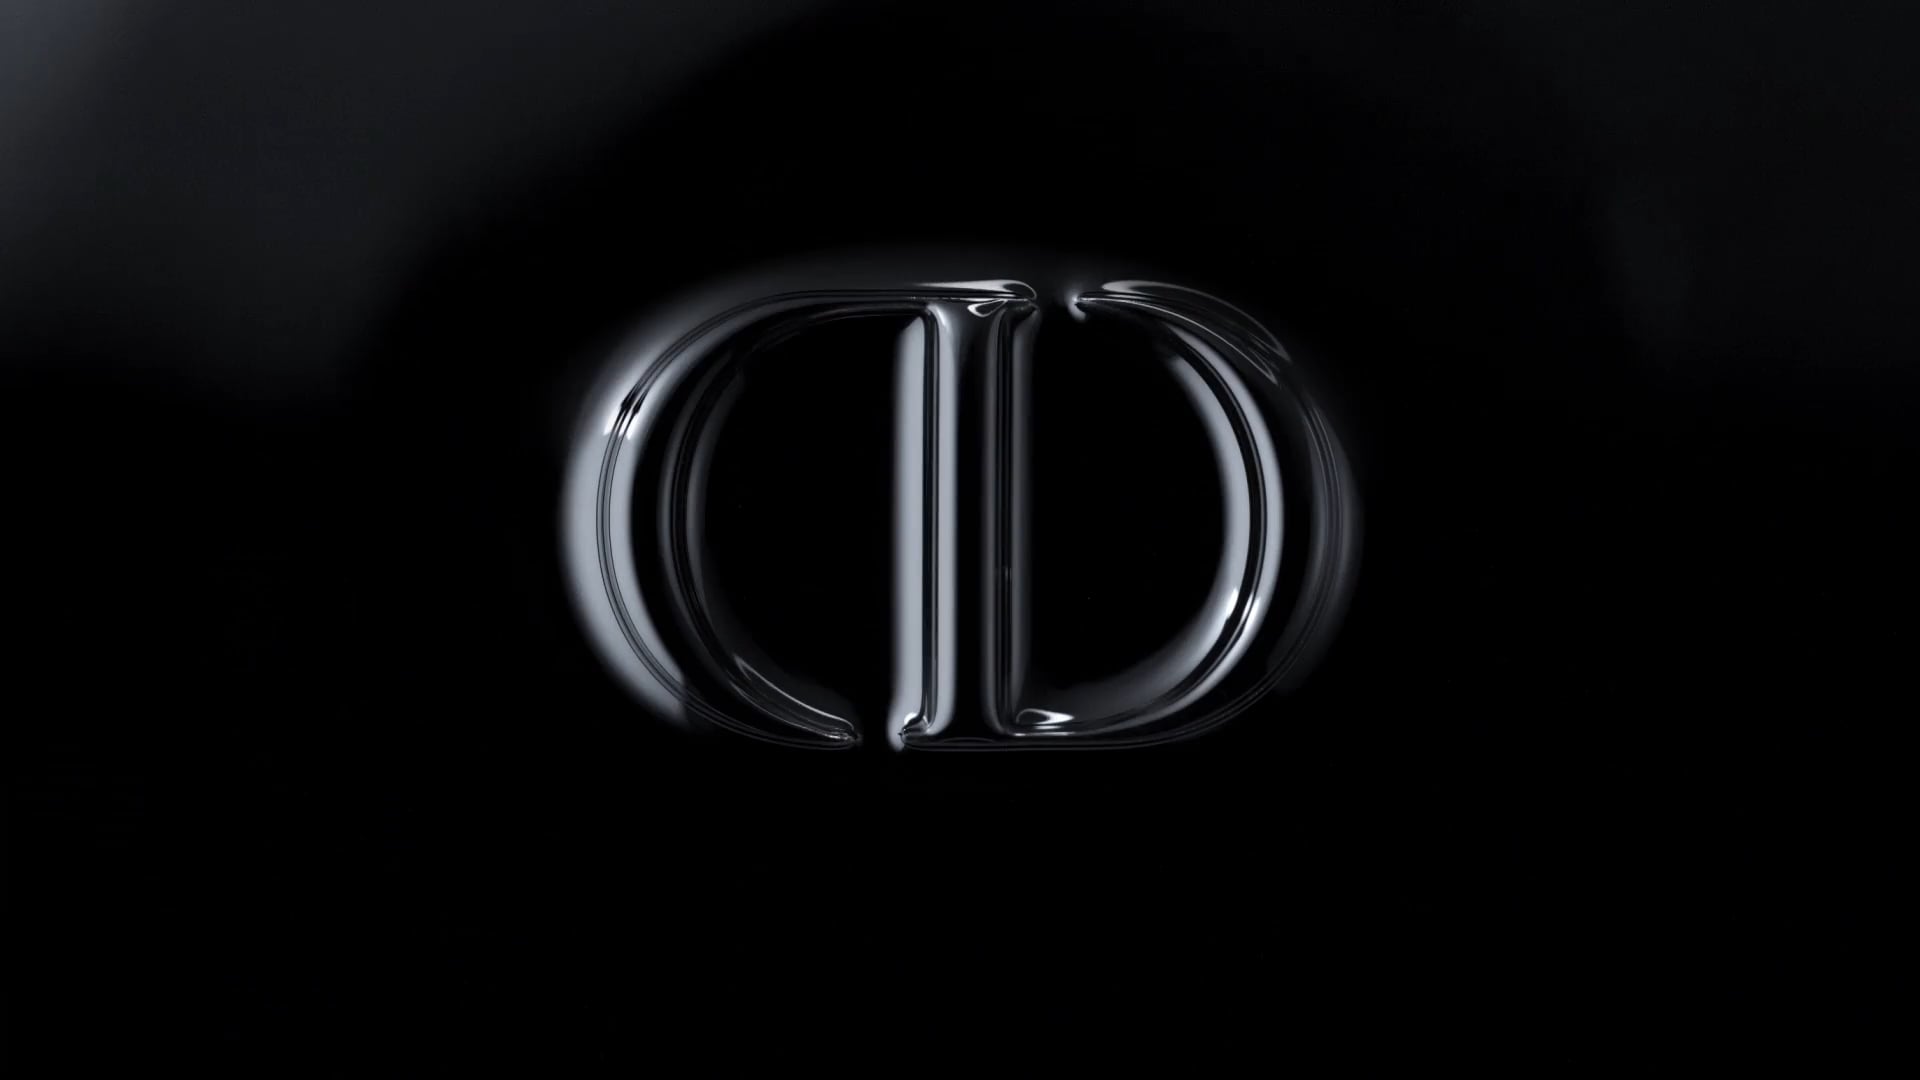 Dior // COLOR OF FASHION // BLACK